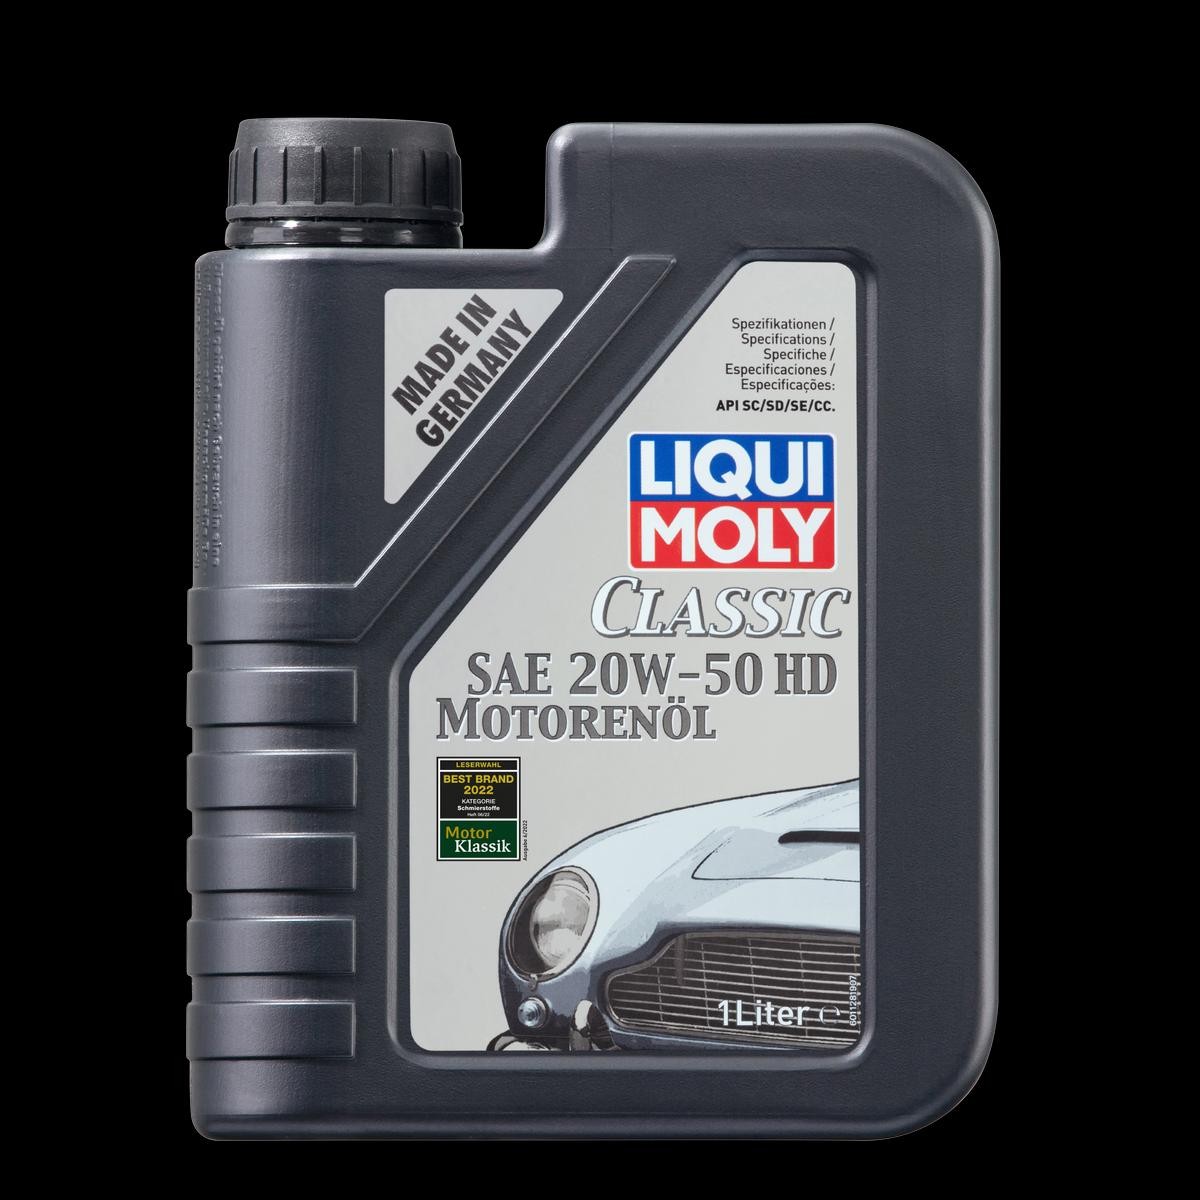 LIQUI MOLY Classic Motoroil, HD 1128 Engine oil 20W-50, 1l, Mineral Oil